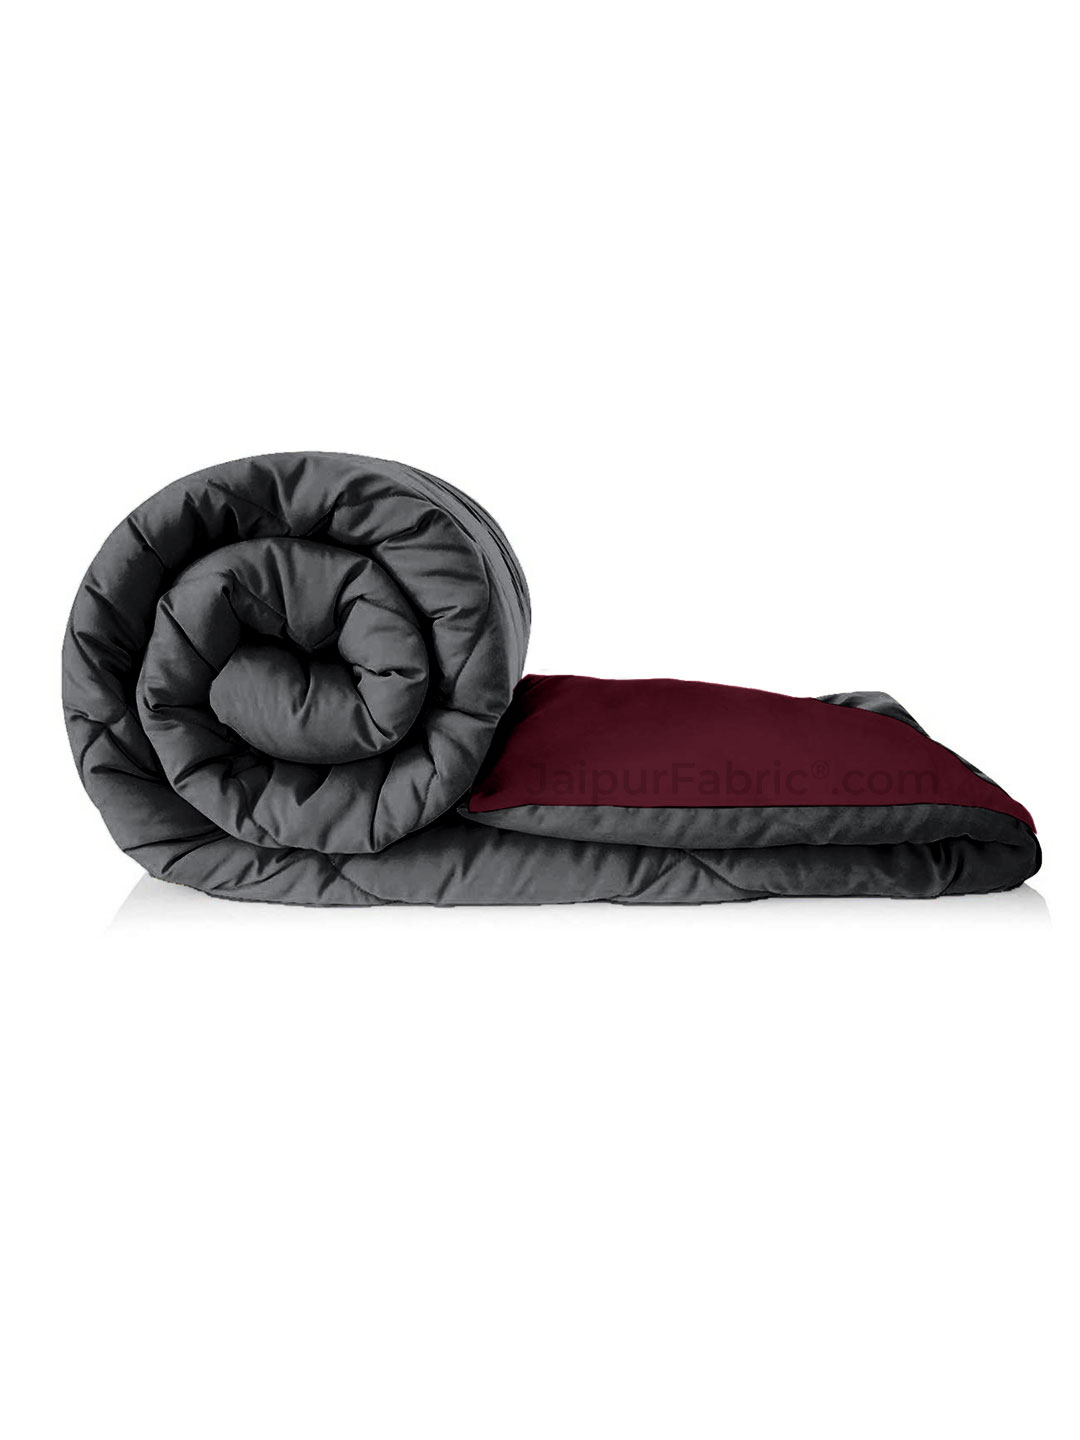 Dark Grey Maroon Single Bed Comforter